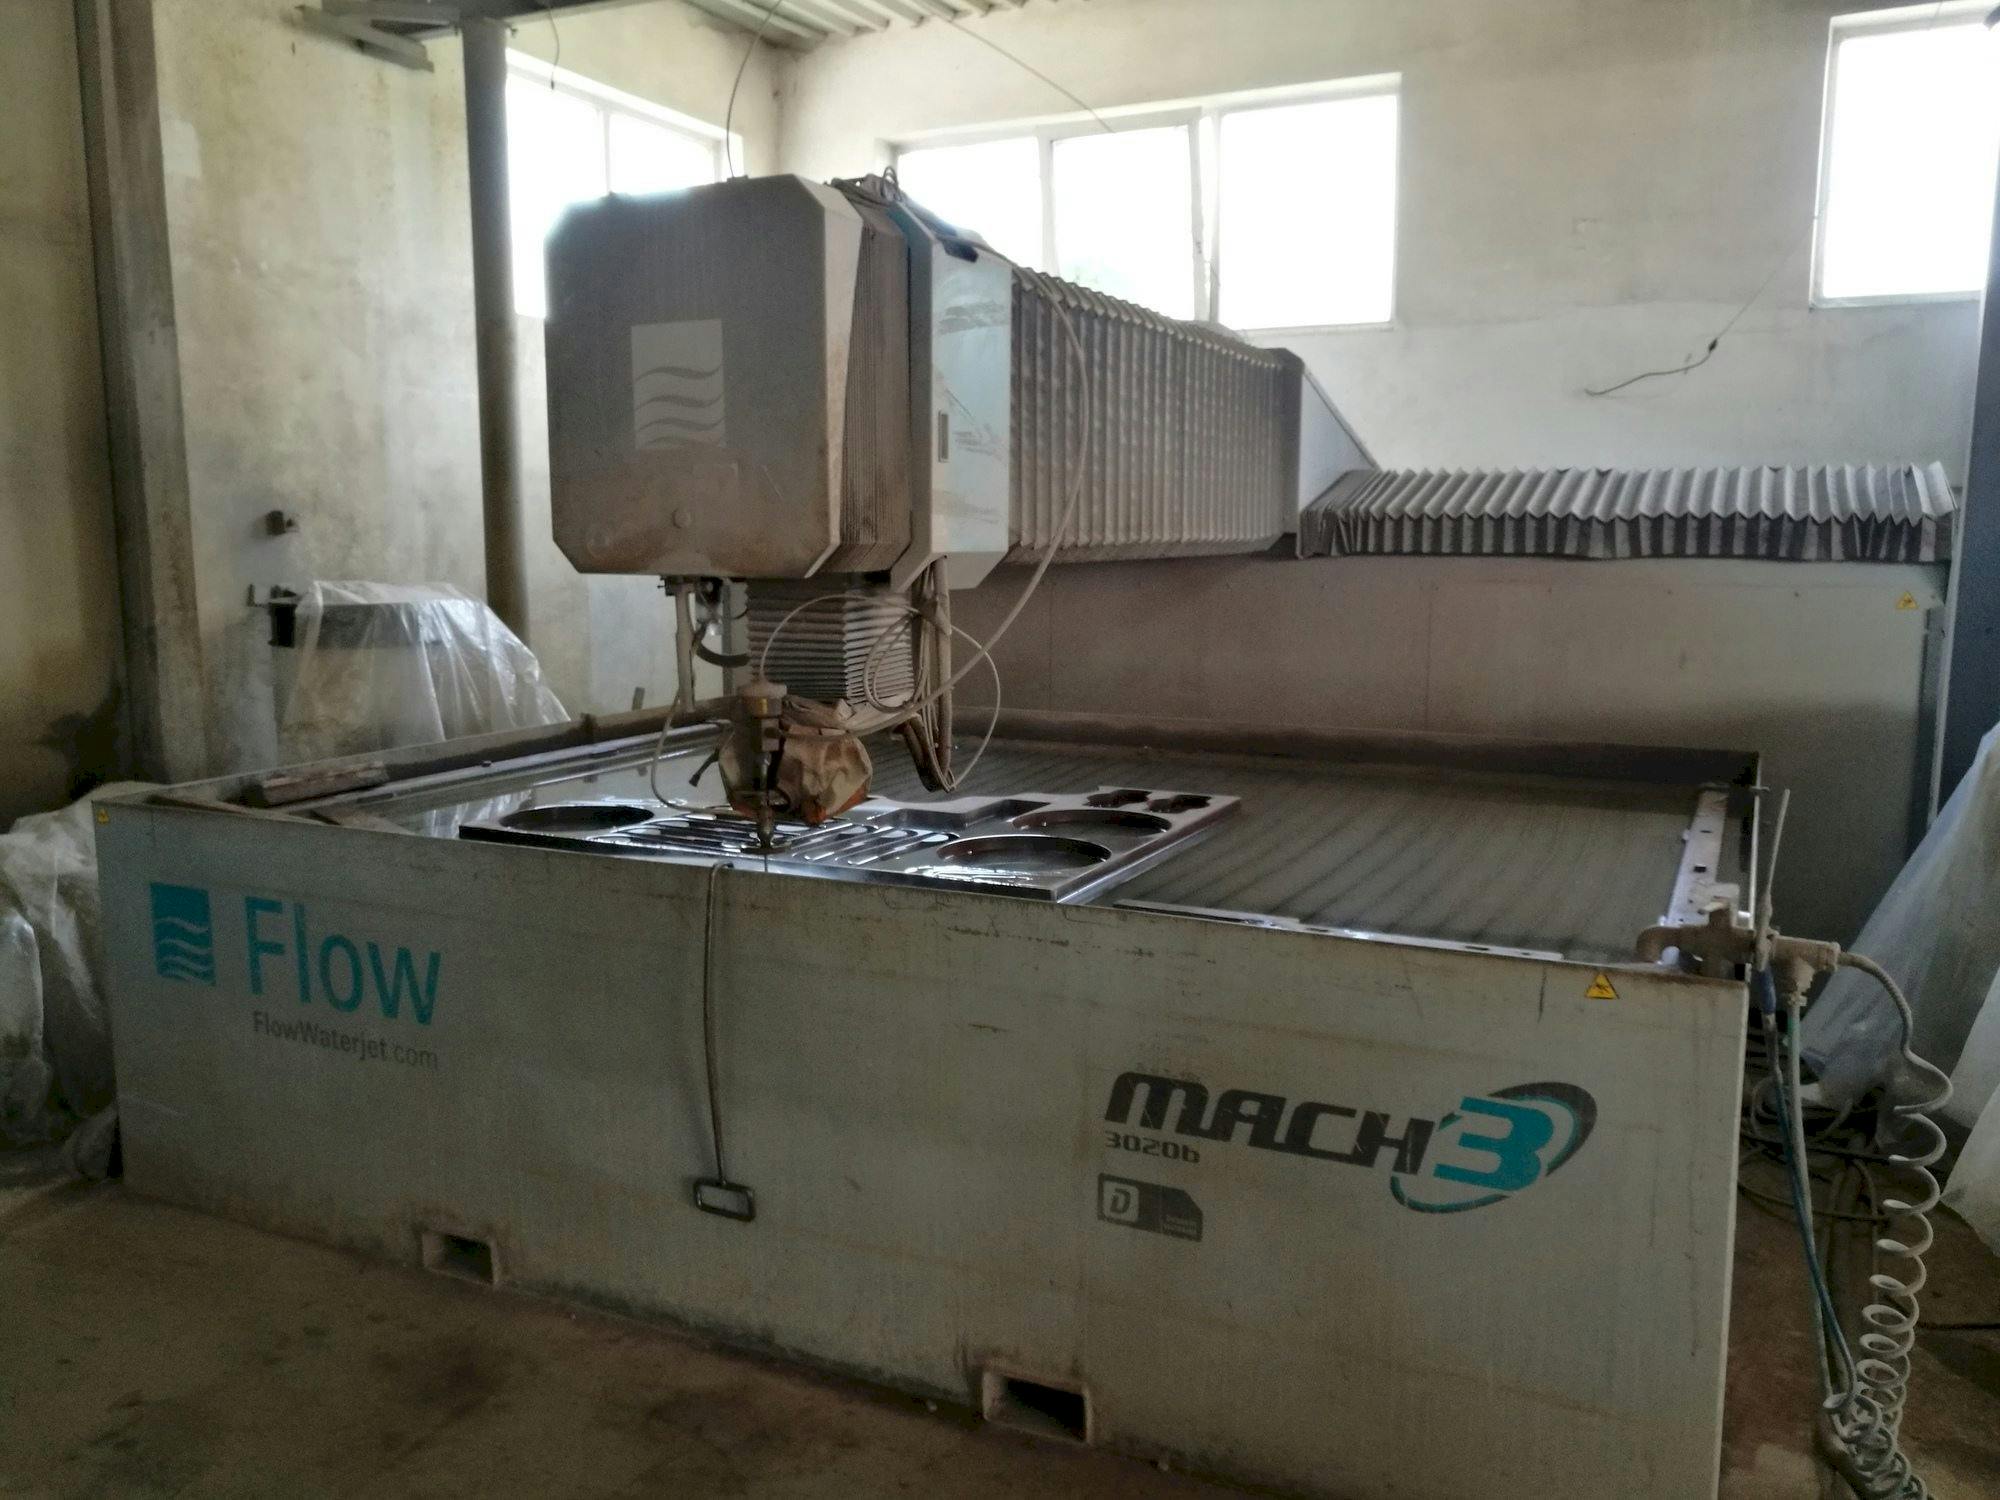 Vooraanzicht  van Flow Mach3-3020b  machine